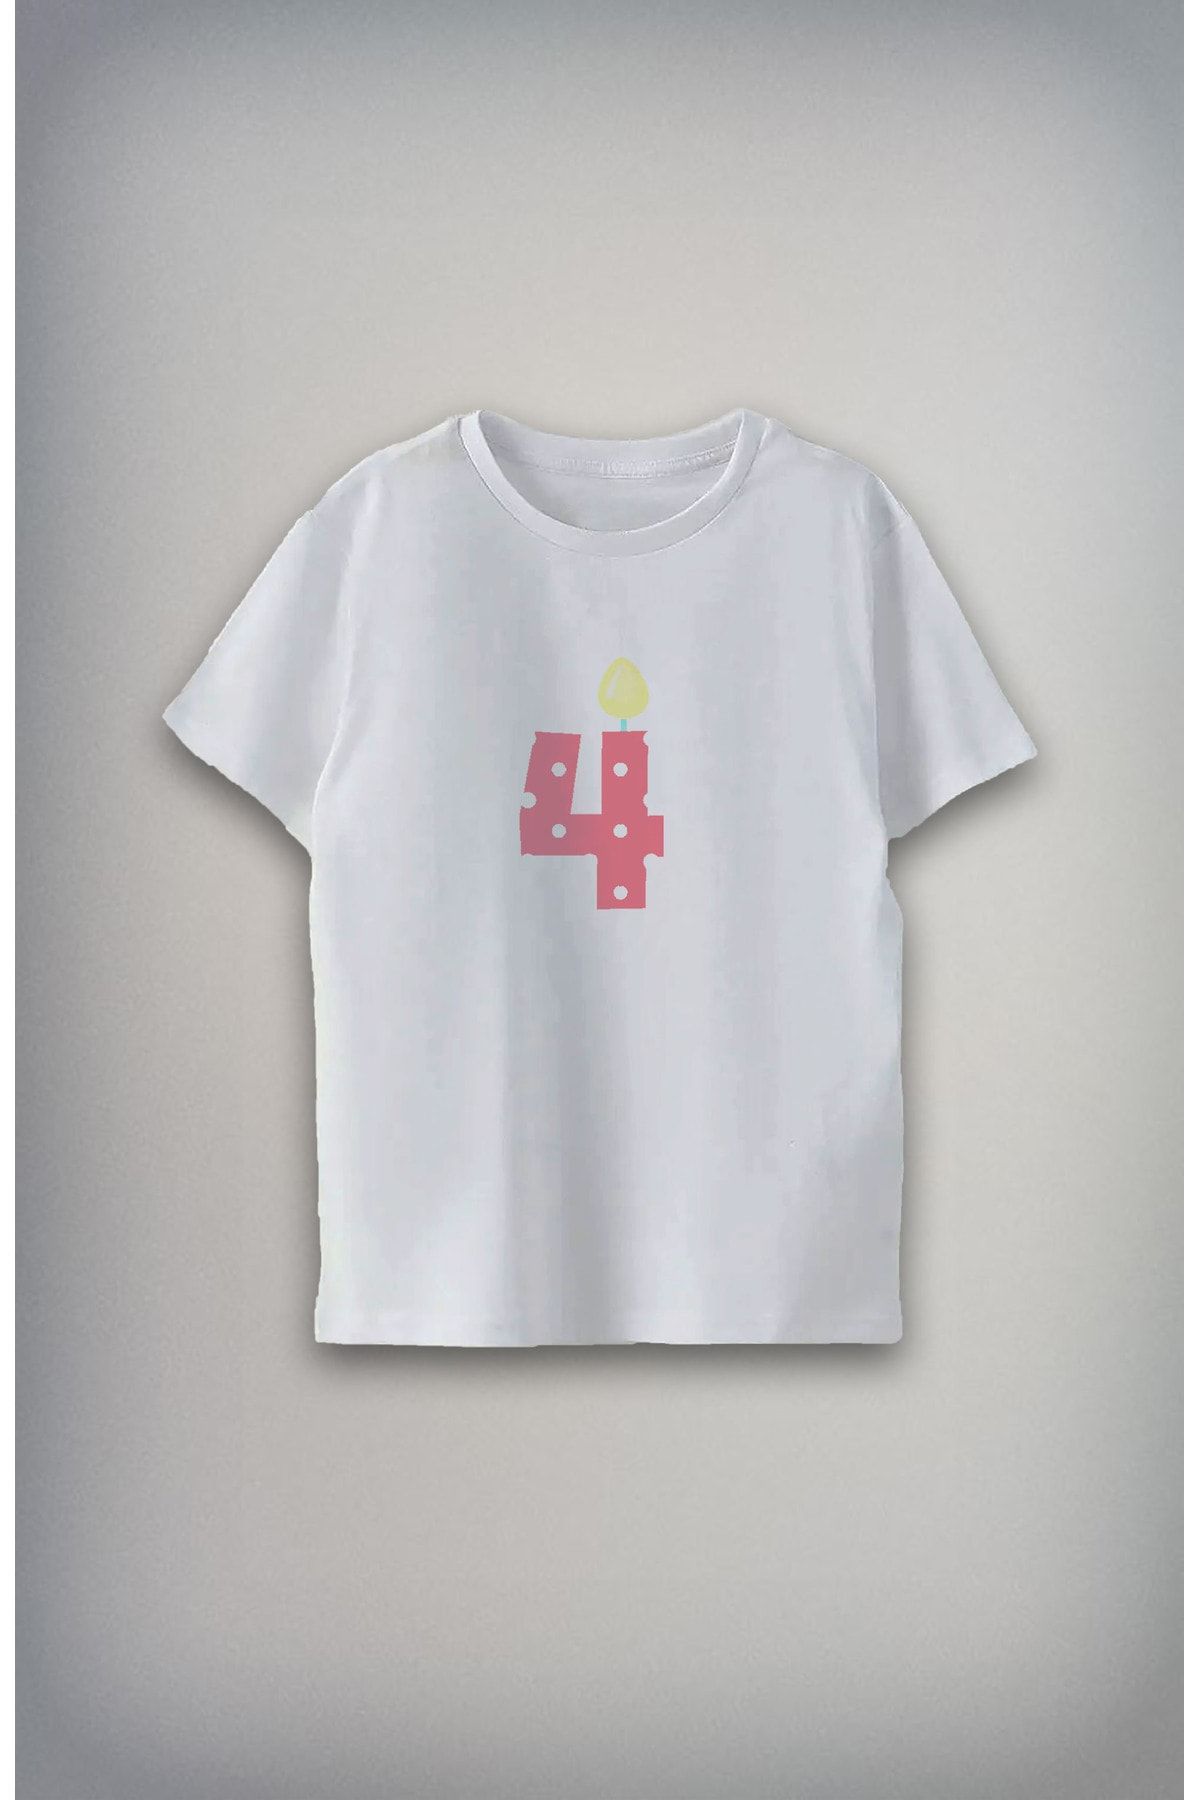 Darkia 8 Yaş Özel Tasarım Baskılı Unisex Çocuk T-shirt Tişört